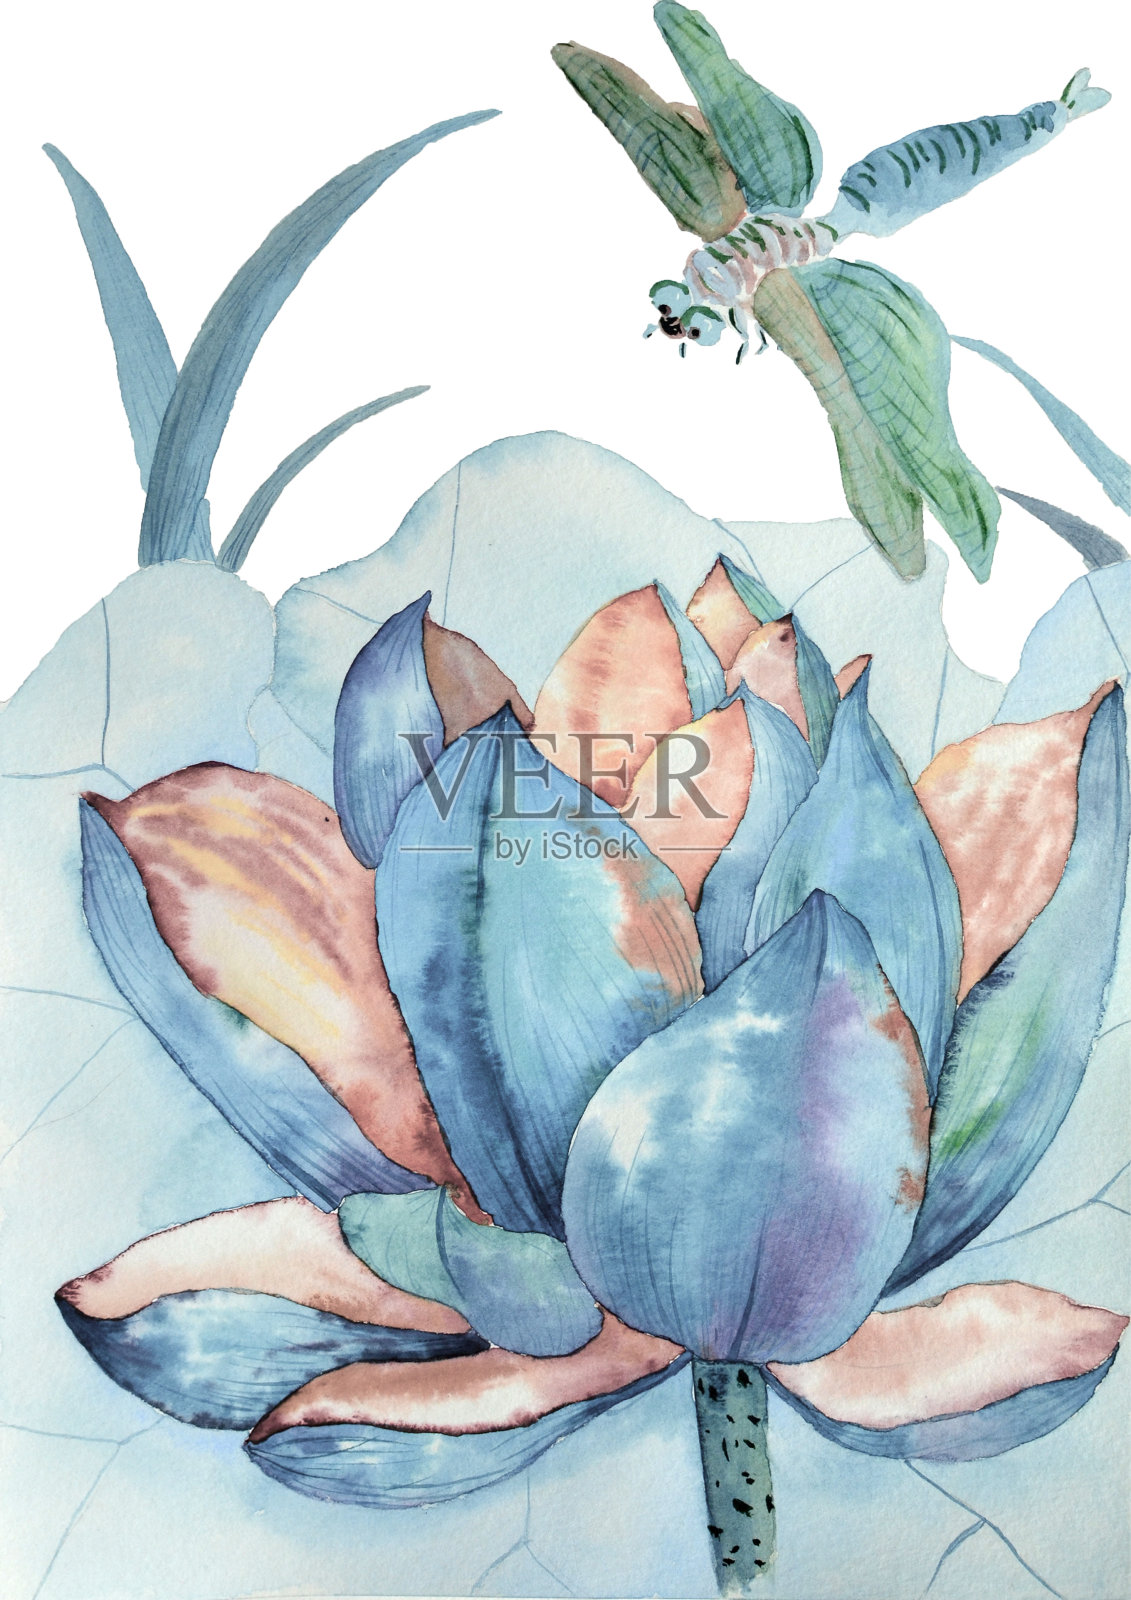 蓝莲花和蜻蜓的原画水彩画插画图片素材